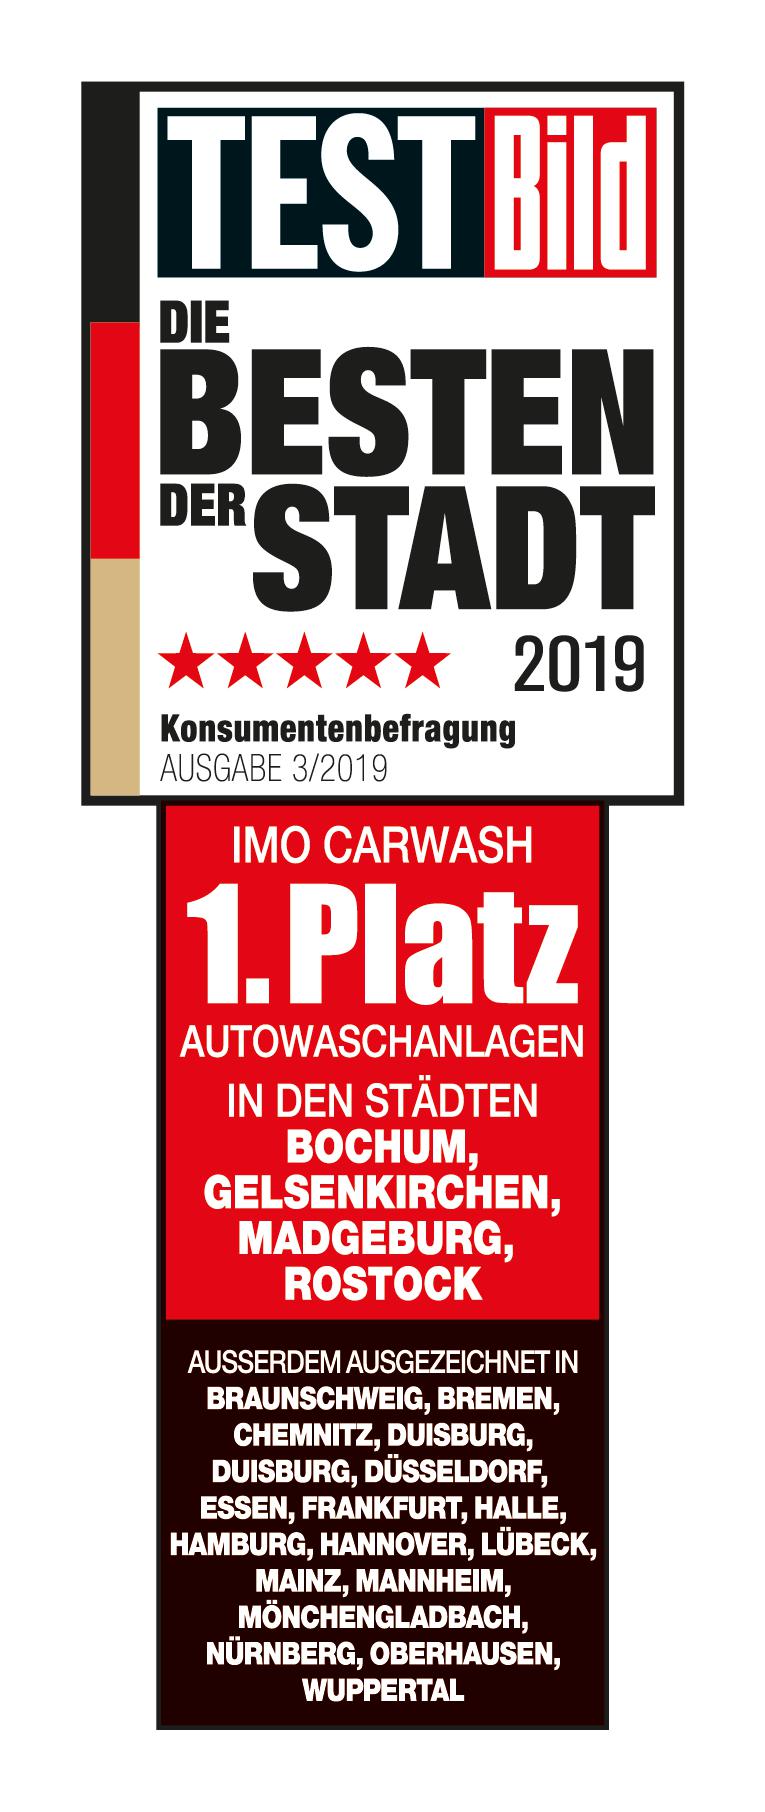 IMO Car Wash, Senefelder Str. 4 in Braunschweig